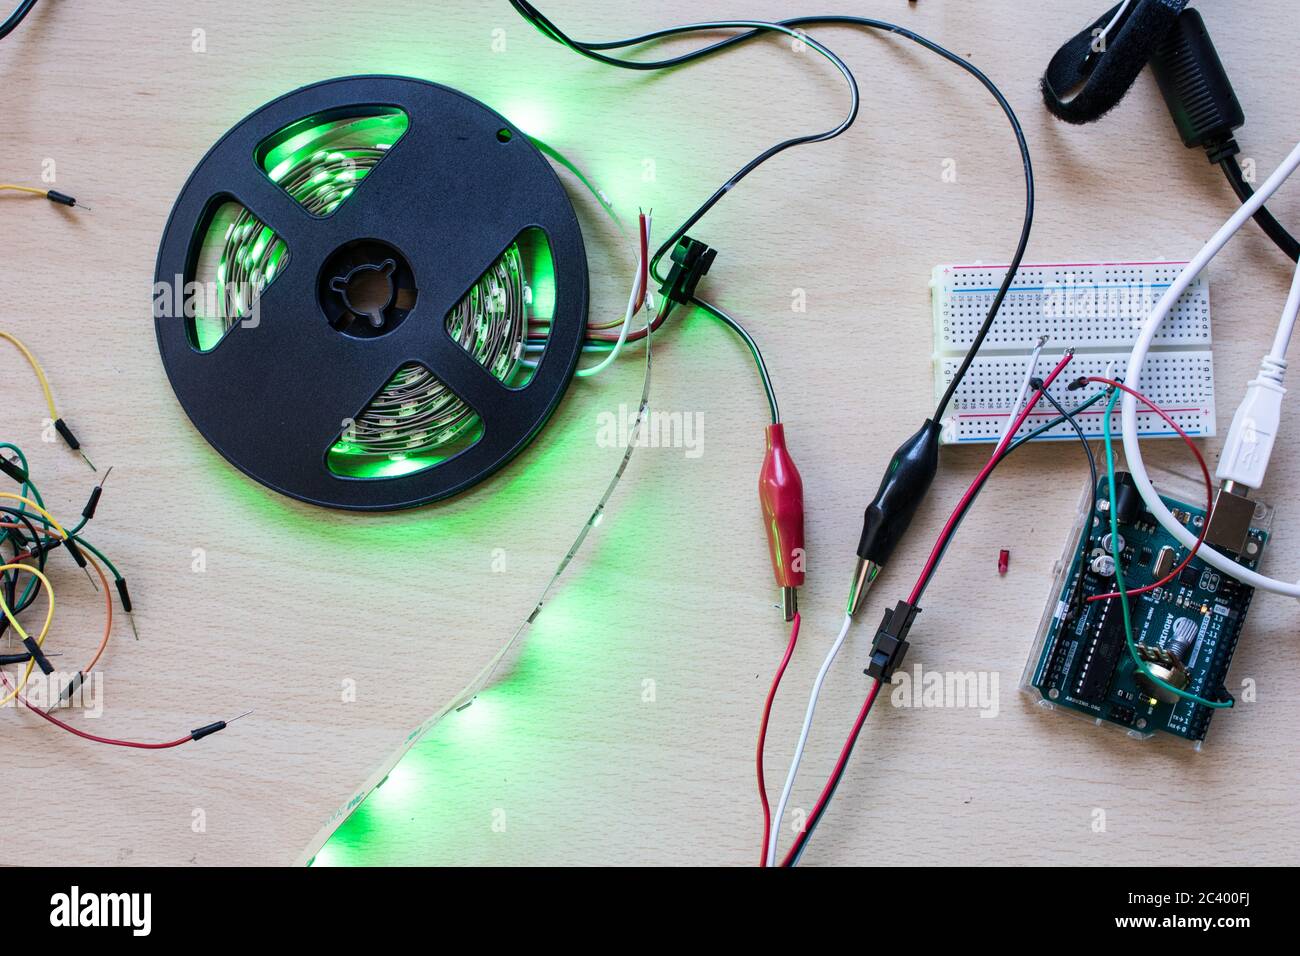 RGB-LED-Streifen adressierbar gesteuert durch einen Mikrocontroller Open  Source, um grünen Farbfluss haben. Maker-Projekt für DIY-Umwelt  Beleuchtung. Leuchten für Stockfotografie - Alamy